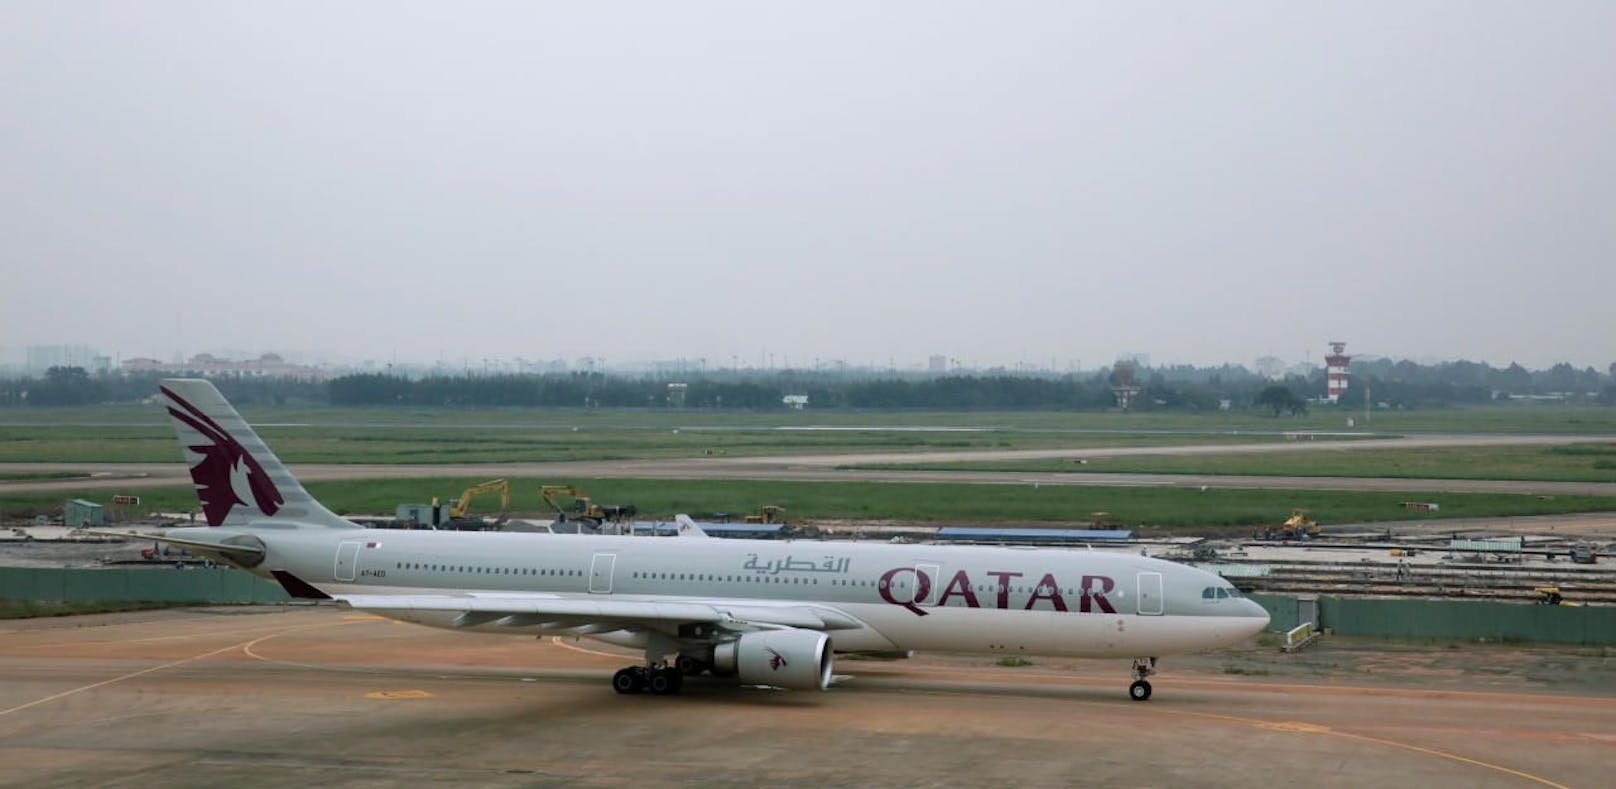 Der Ehestreit zwang ein Flugzeug der Qatar Airways zur Landung - Symbolfoto